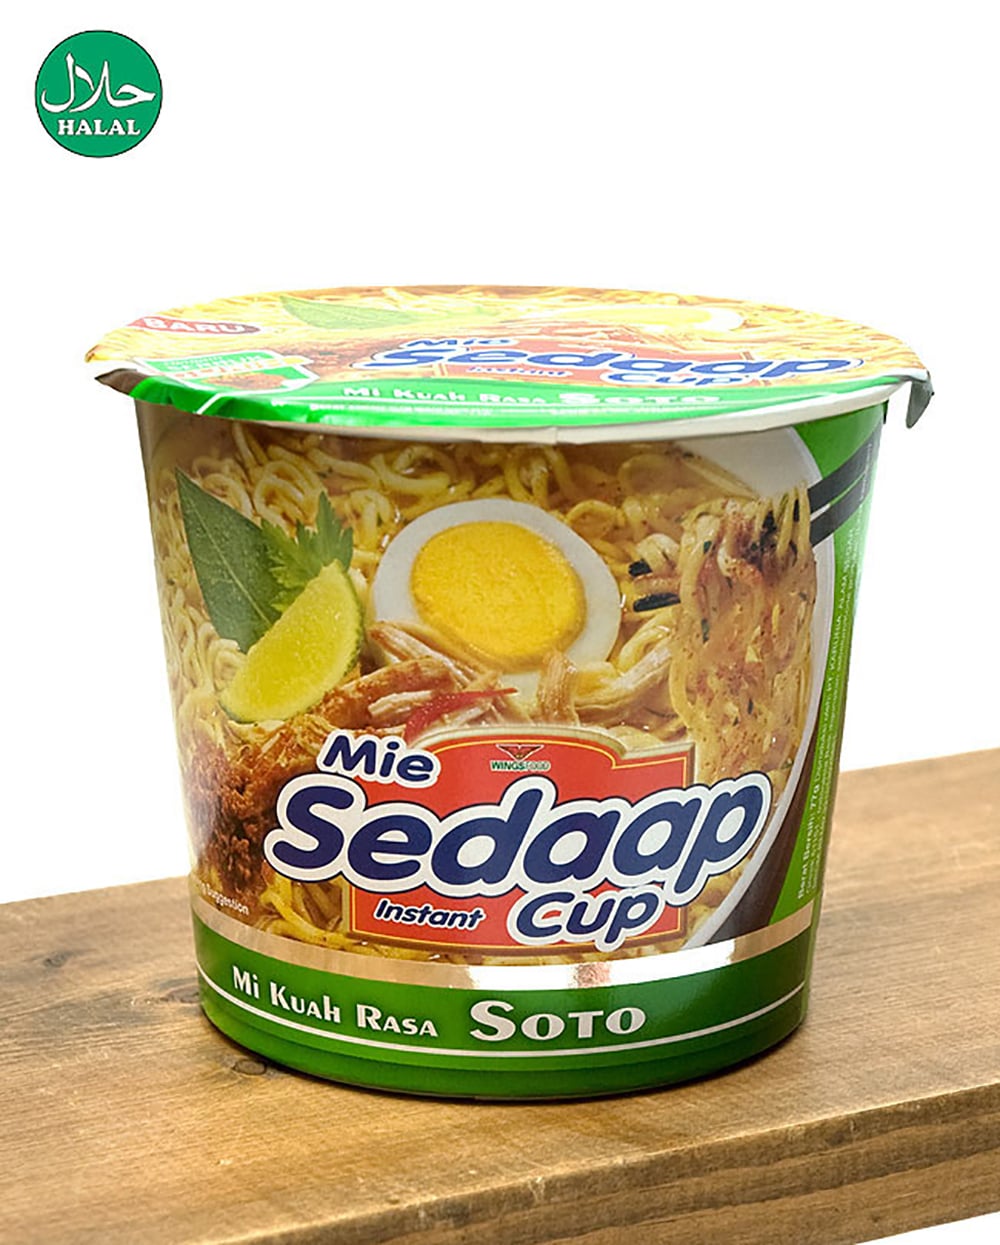 インスタント カップ ヌードル ソトミー味 - SOTO Cup  【Mie Sedaap】 の写真1枚目です。野菜のやさしい味わいのインスタントヌードル
インドネシア料理,インドネシア,インスタント麺, 肉野菜味,ハラル